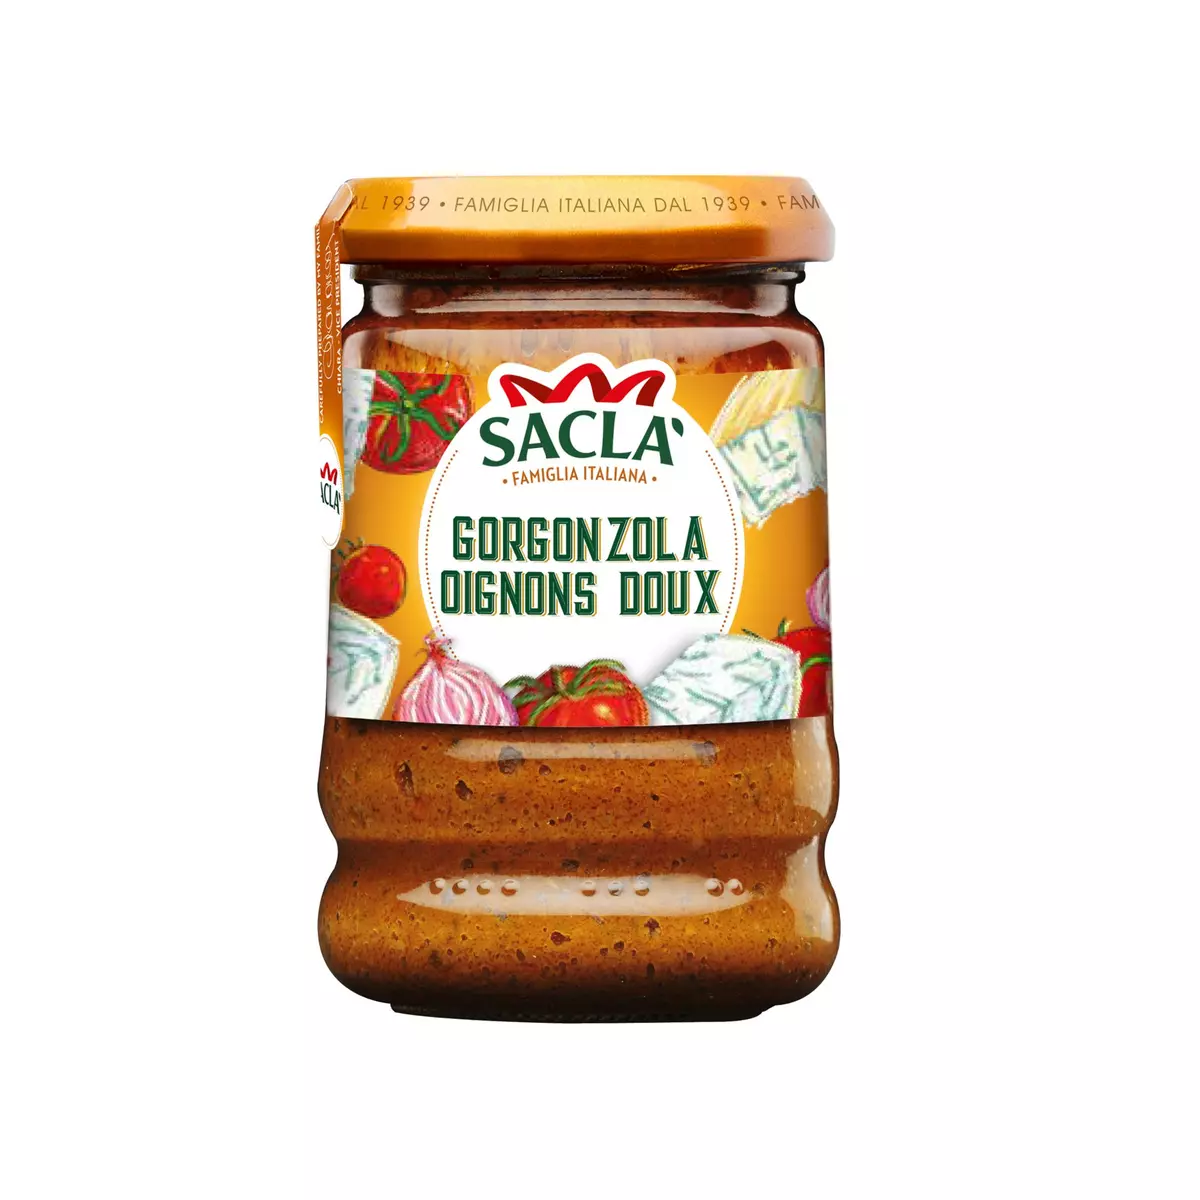 SACLA Sauce Gorgonzola oignons doux 190g